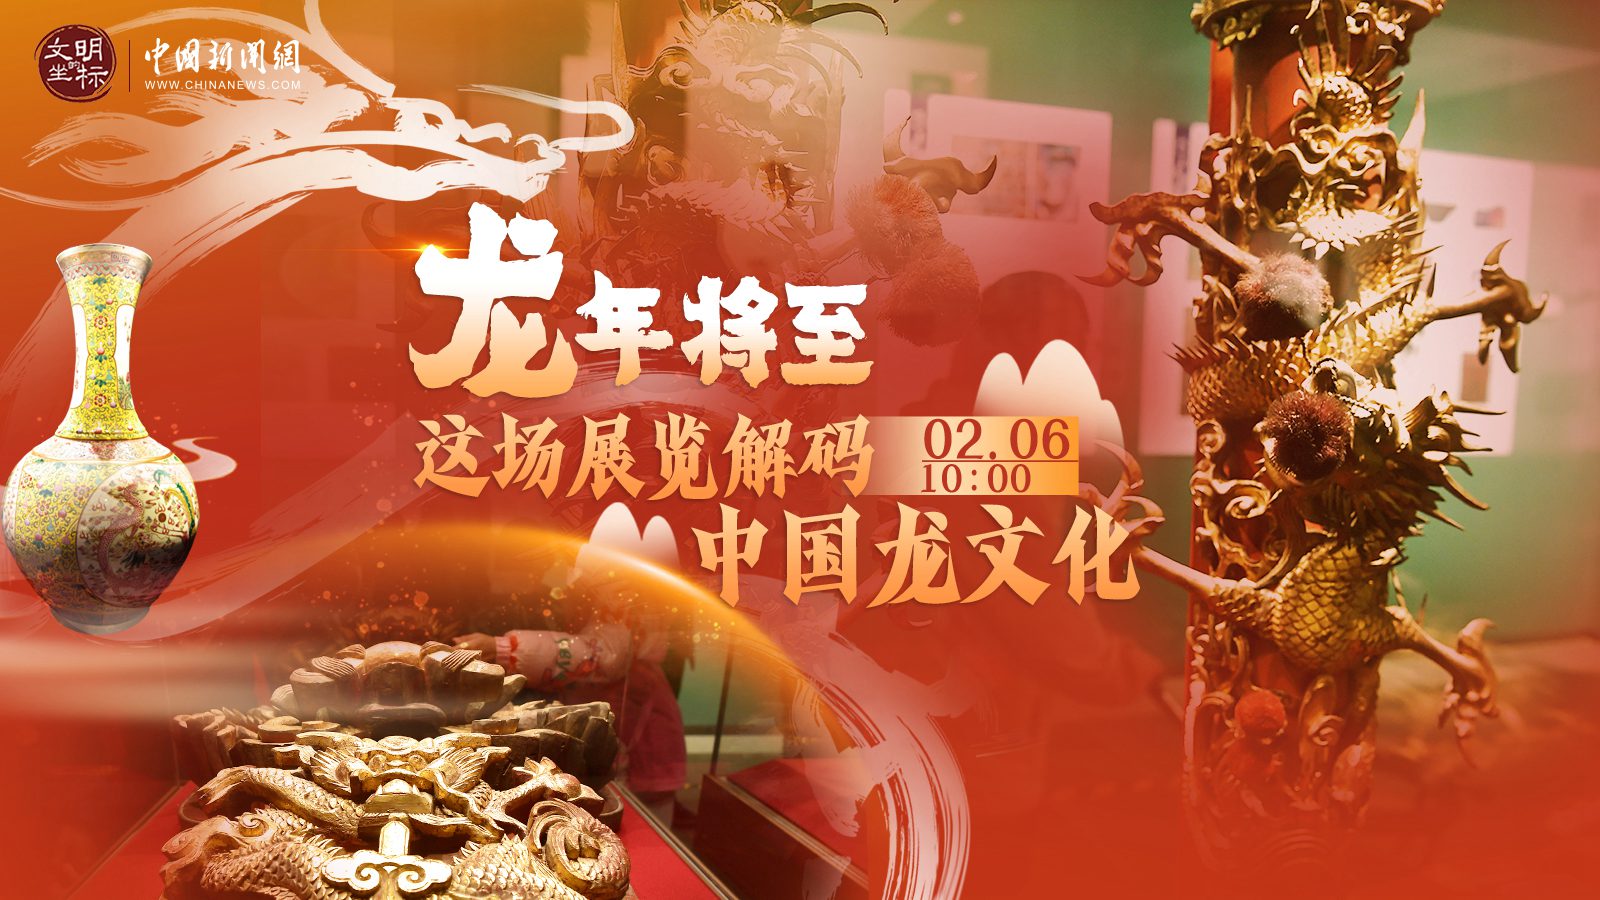 龙年将至 这场展览解码中国龙文化 